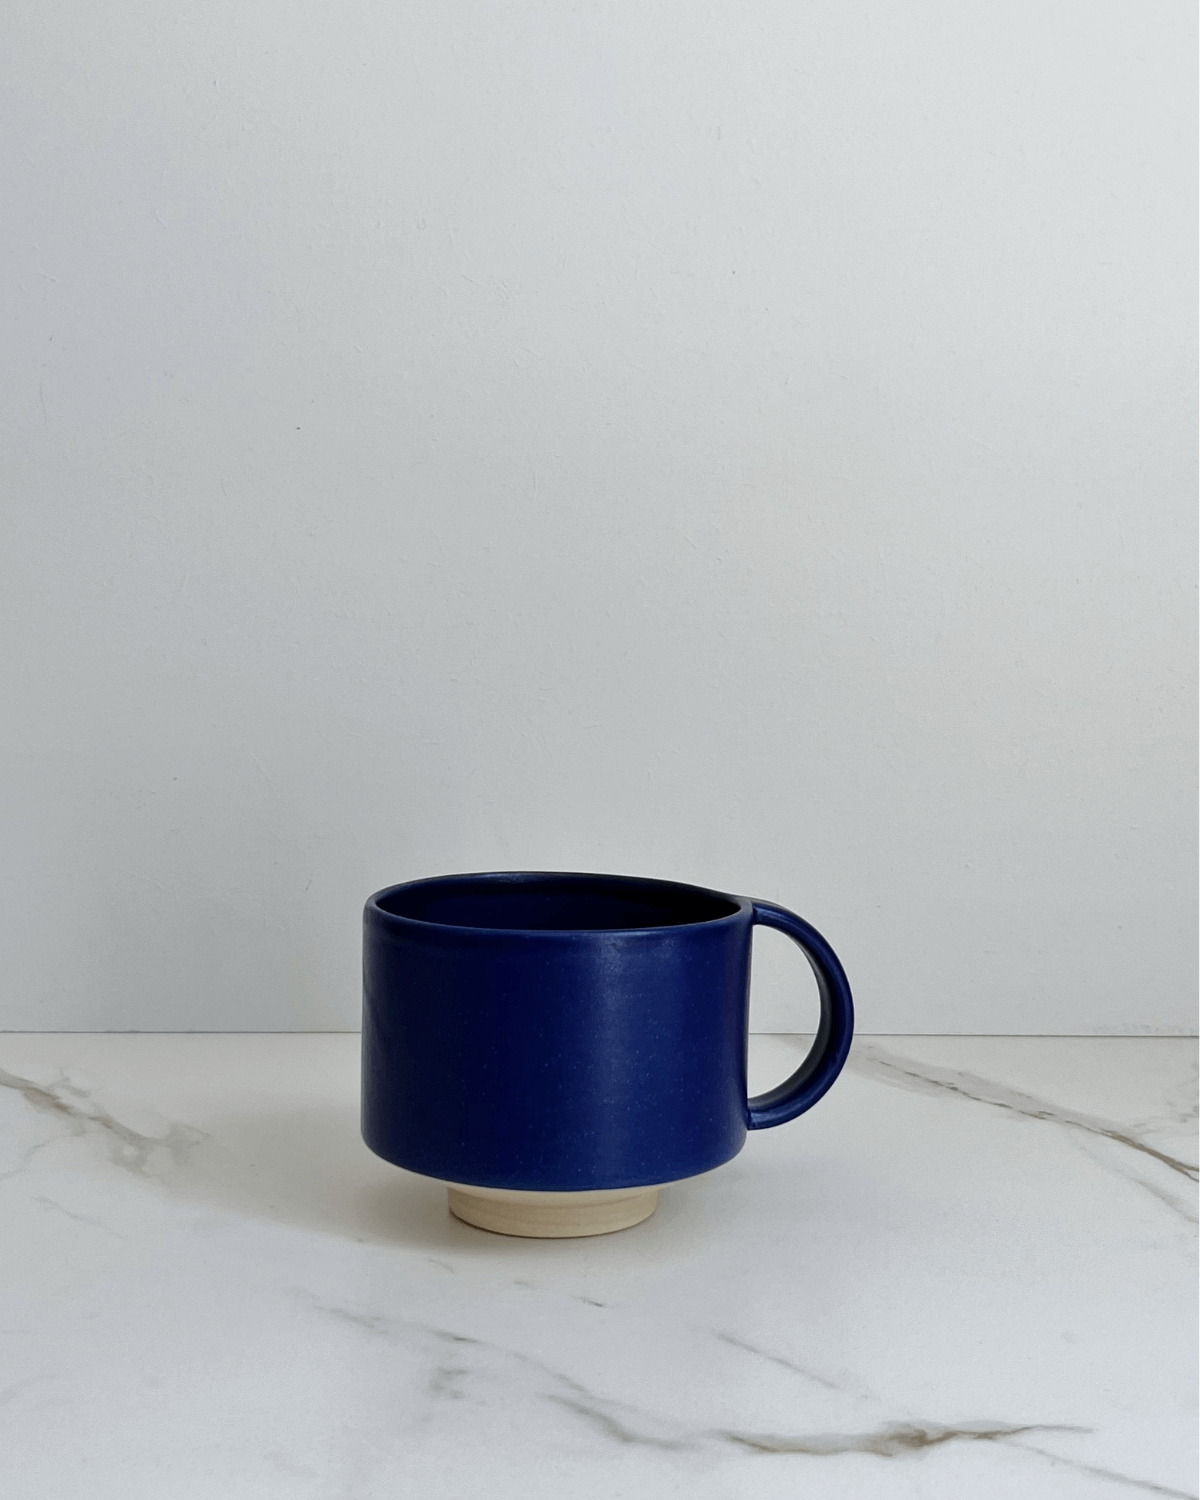 Kop med hank, Blå, Indigo, Håndlavet keramik kop, May Studio